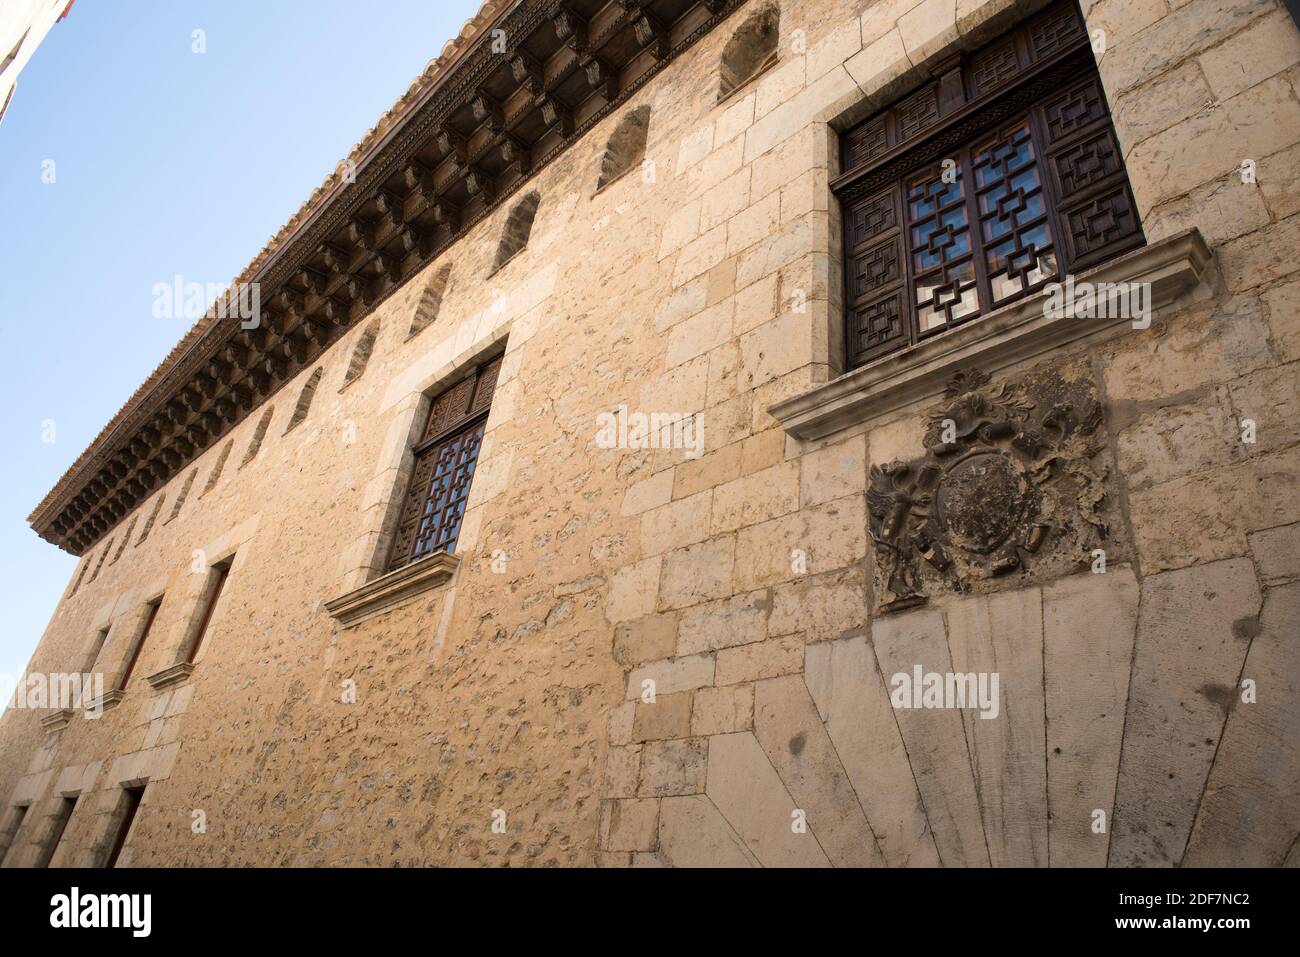 Morella Palacio-casa de Cardenal Ram (siglo 16). Els Ports, Castellón, Comunidad Valenciana, España. Foto de stock